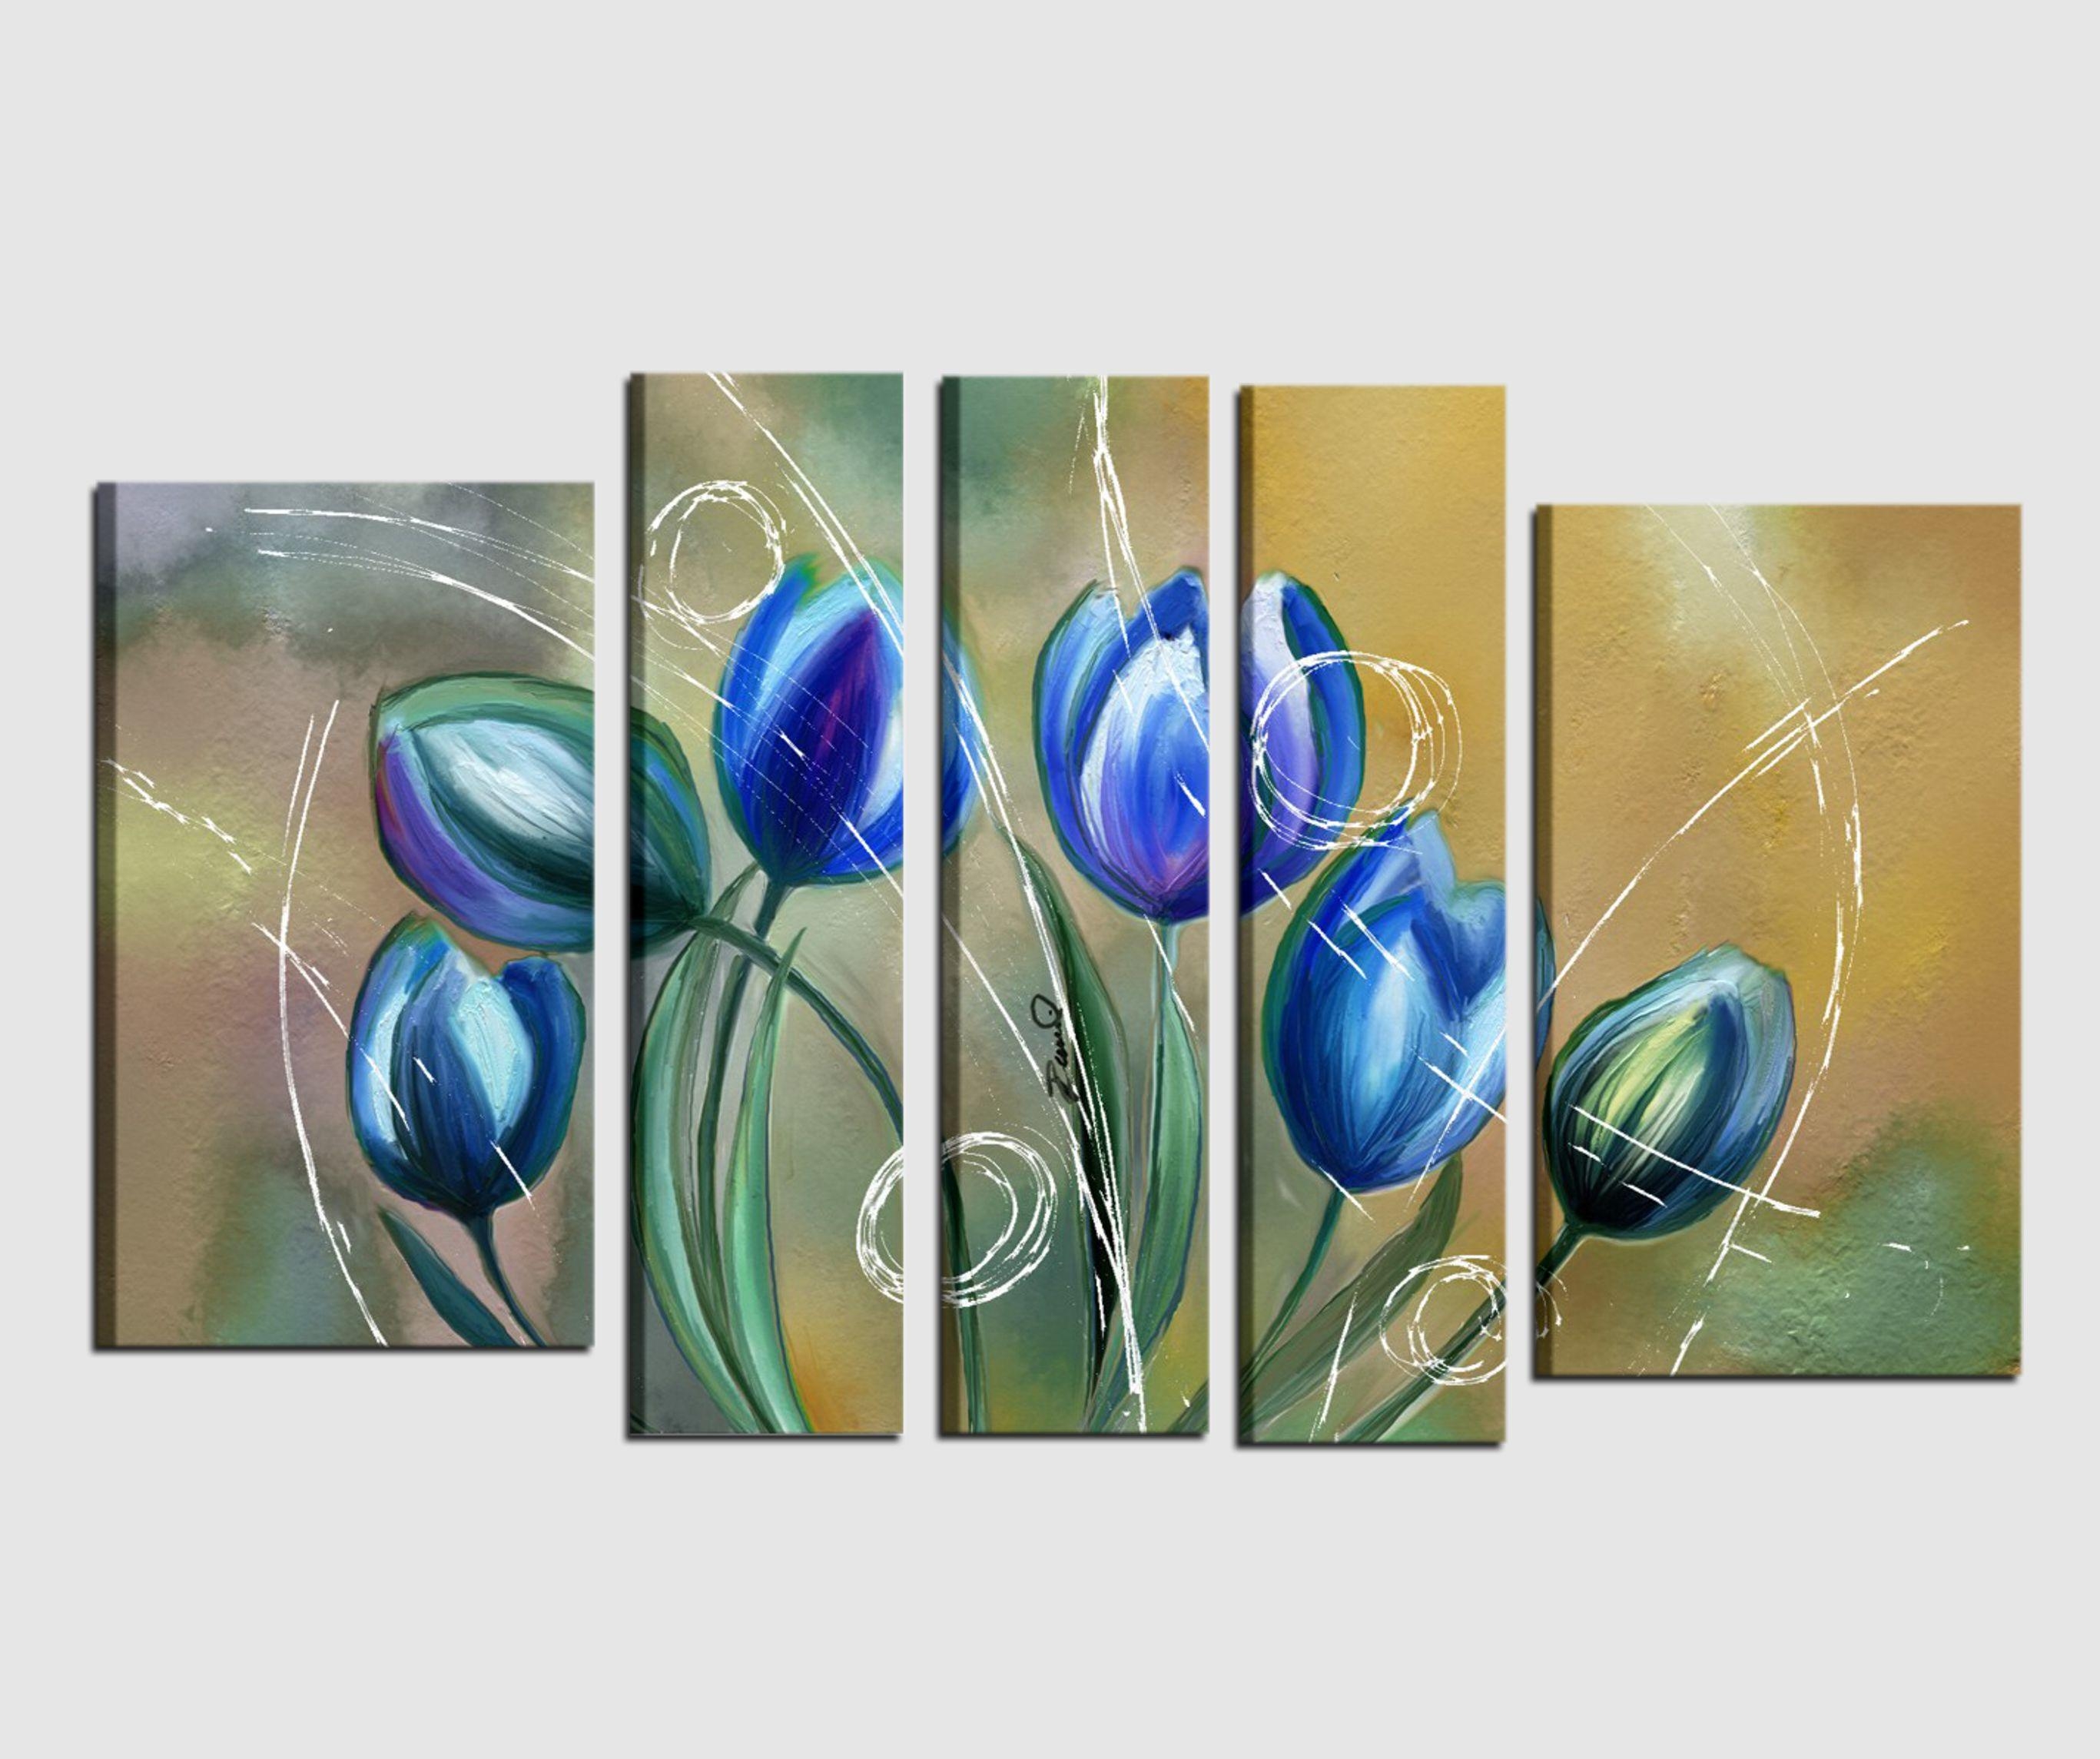 Quadri moderni dipinti a mano con fiori blu incanto for Quadri dipinti a mano dipinti moderni idee arredamento